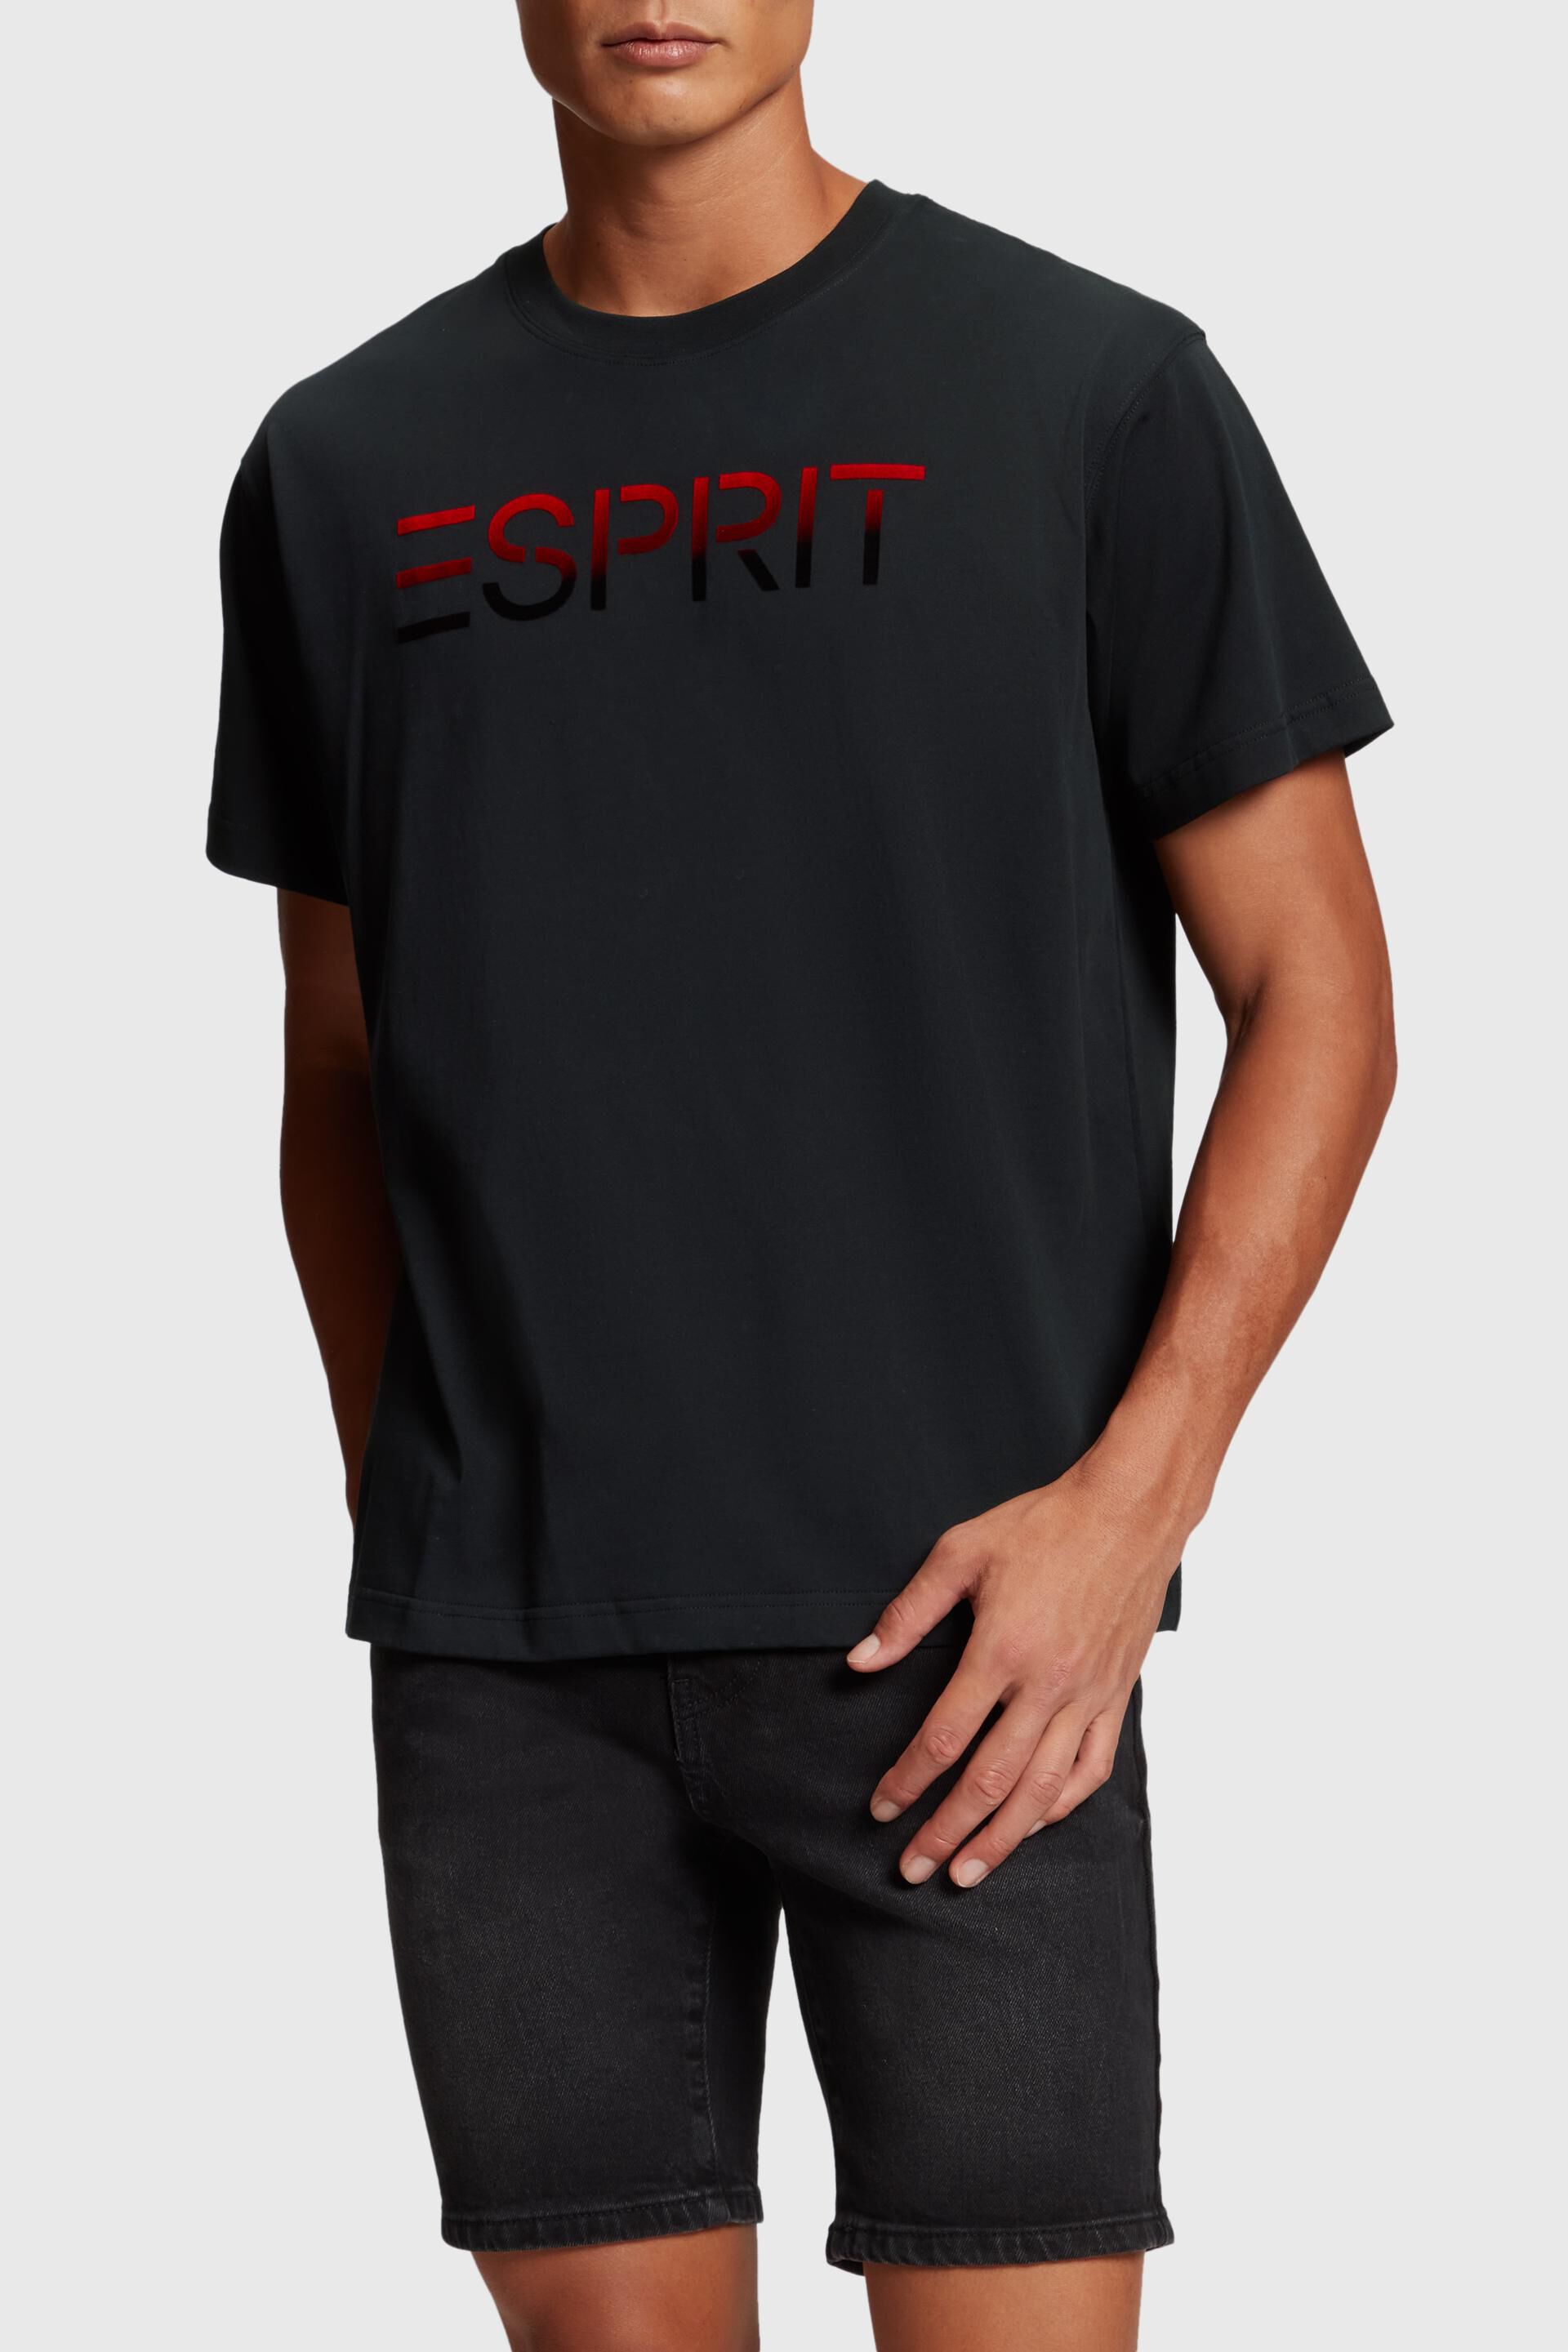 Esprit applique flocked Chest t-shirt logo